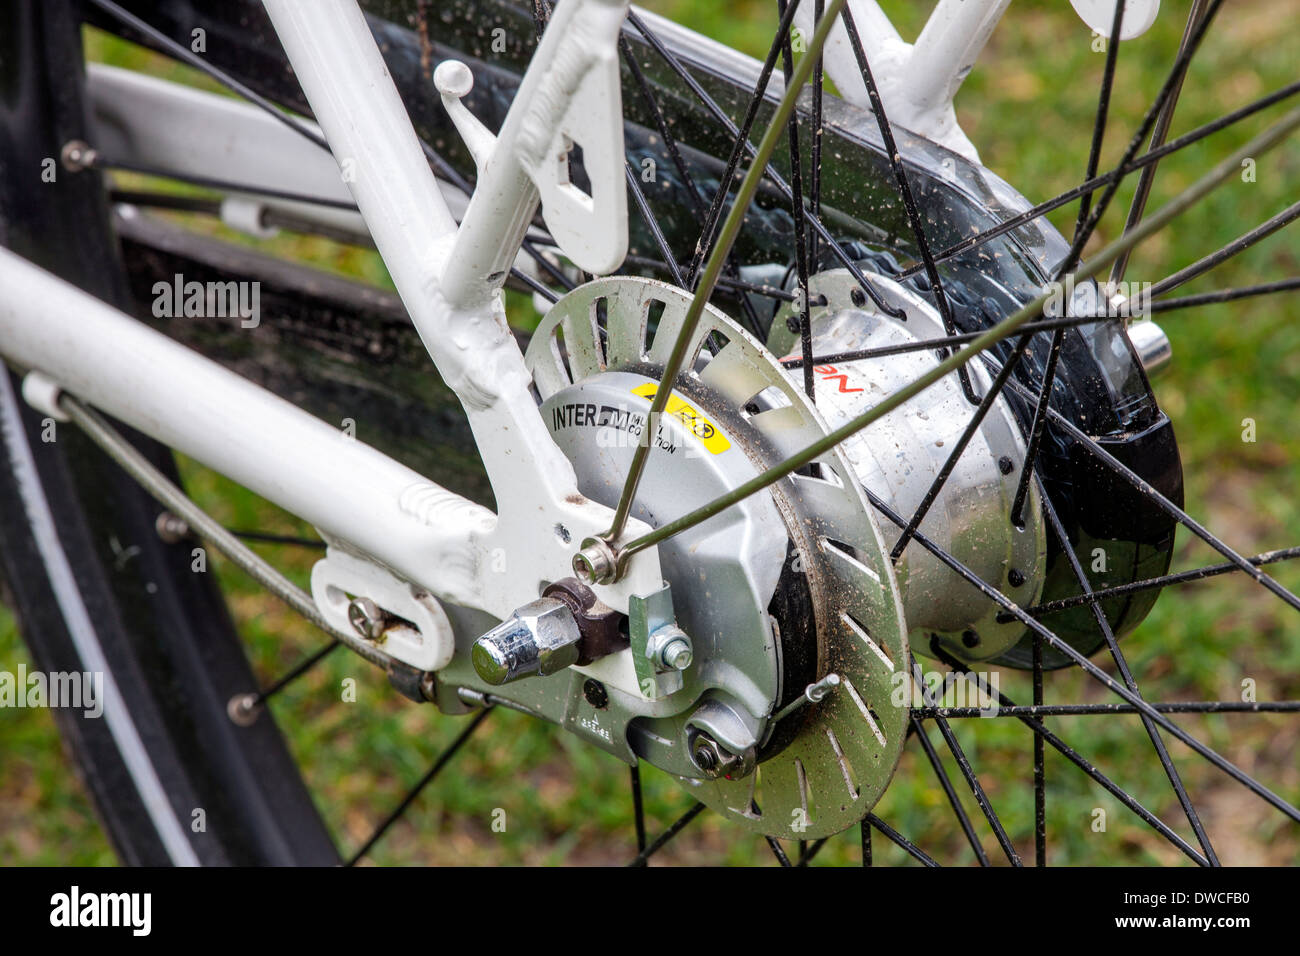 Mozzo posteriore motore del pedelec / e-bike / Bicicletta elettrica Foto Stock